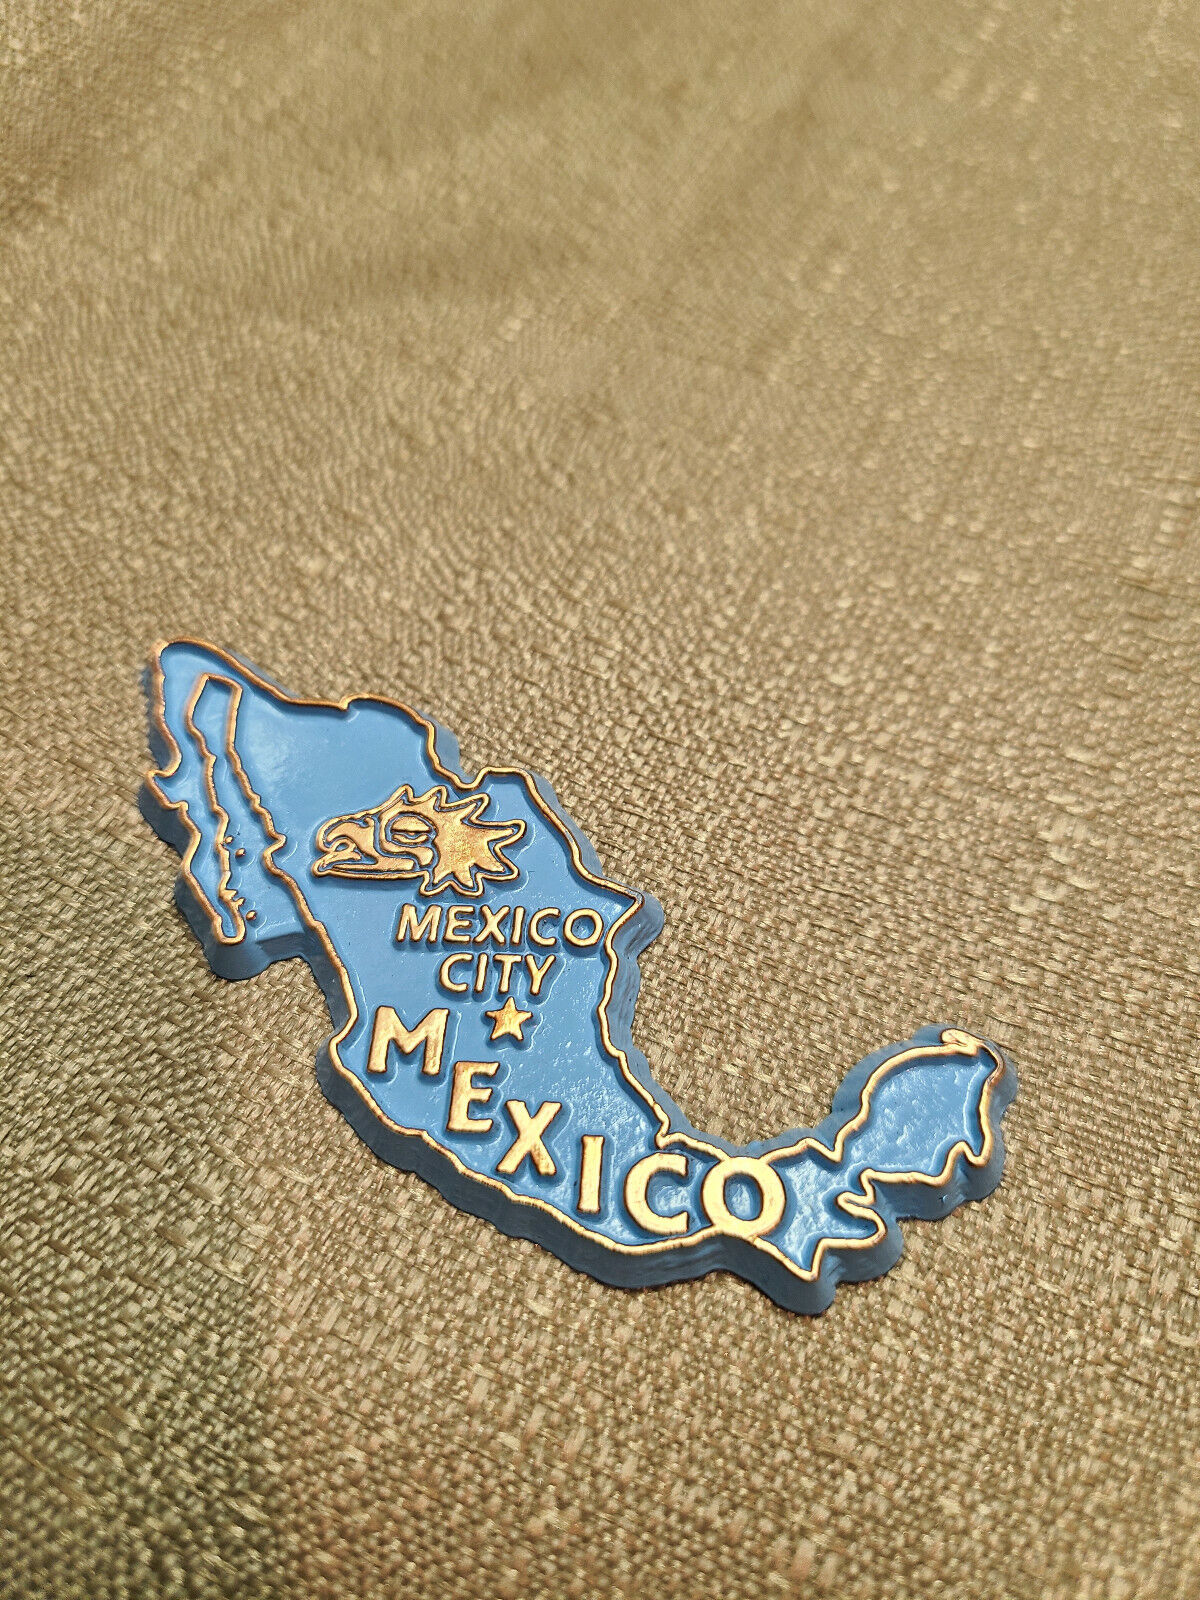 Mexico Souvenir Fridge Magnet - Baby Blue W/Gold